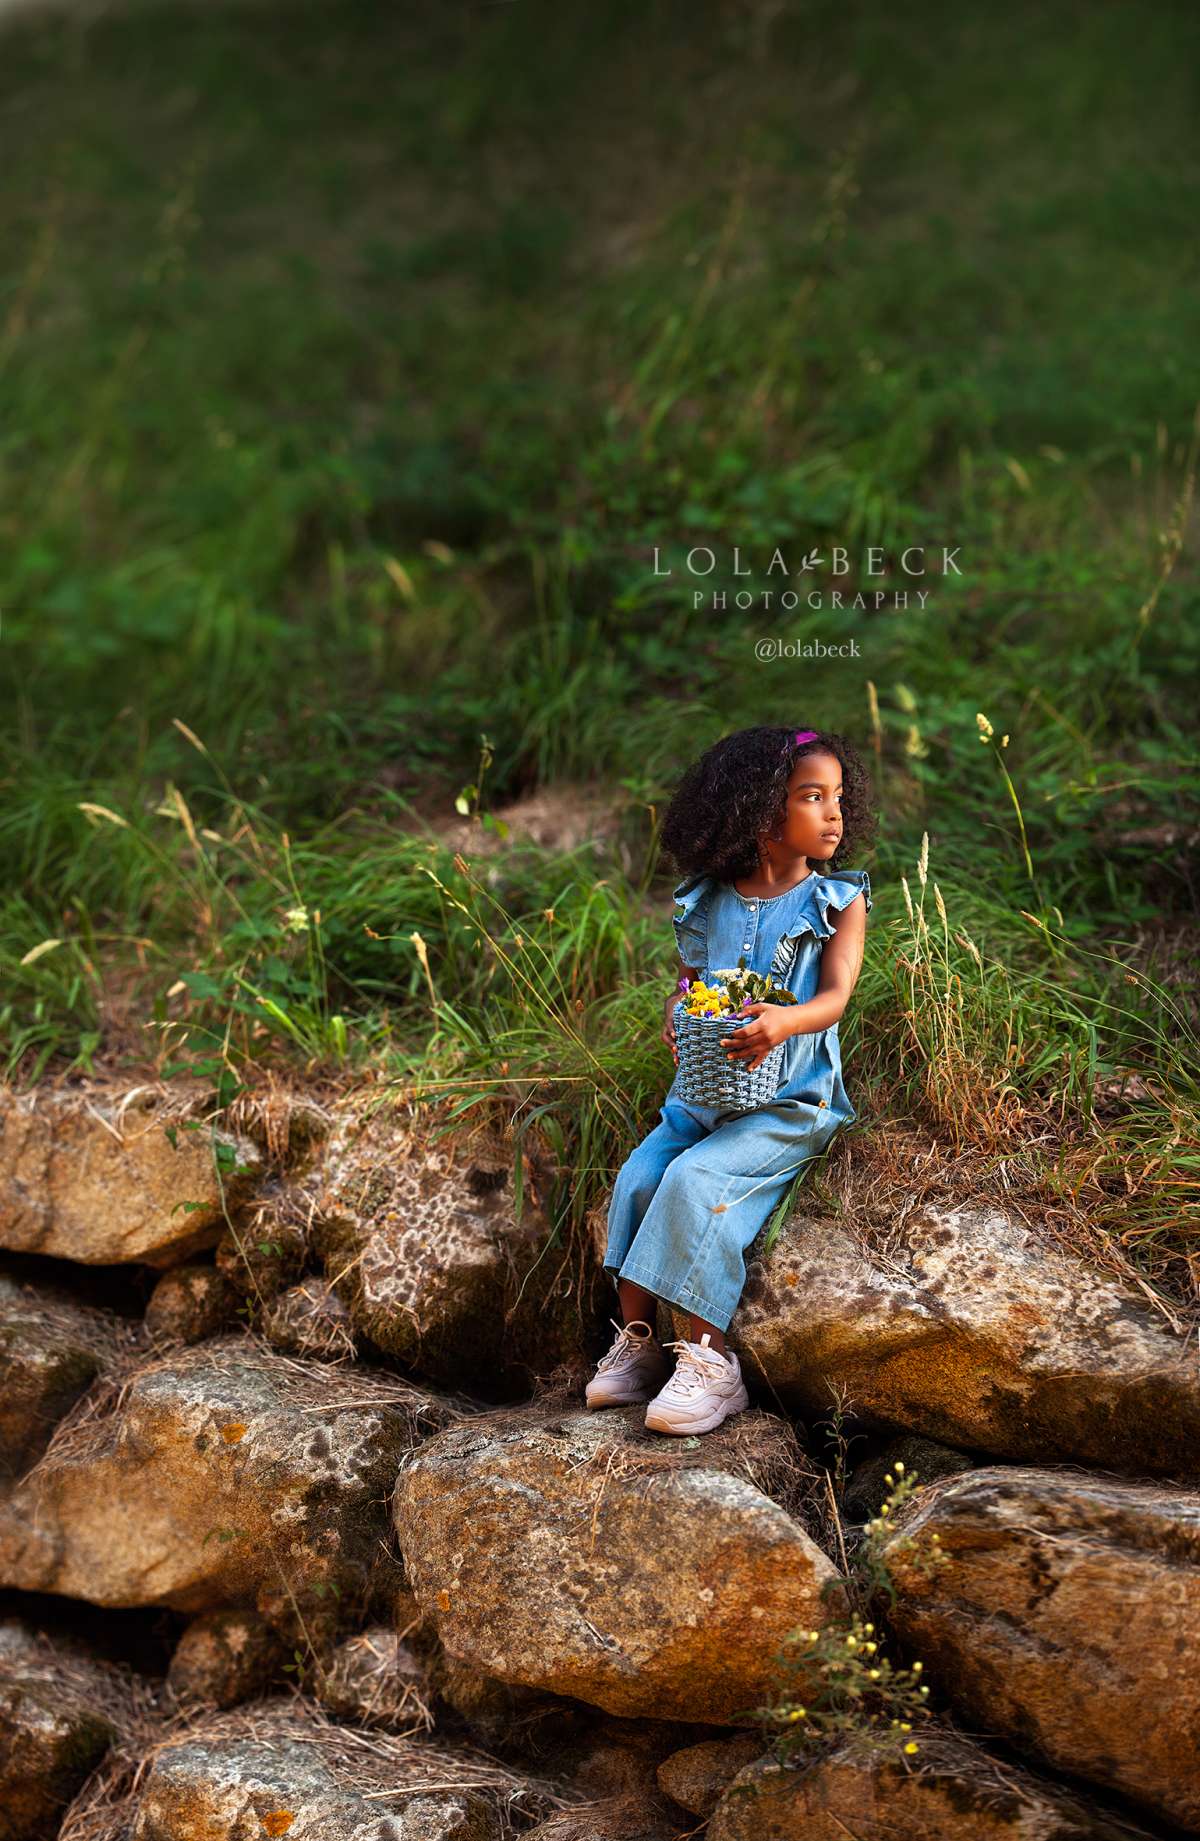 Lola Beck Photography - Vila do Conde - Fotografia de Crianças